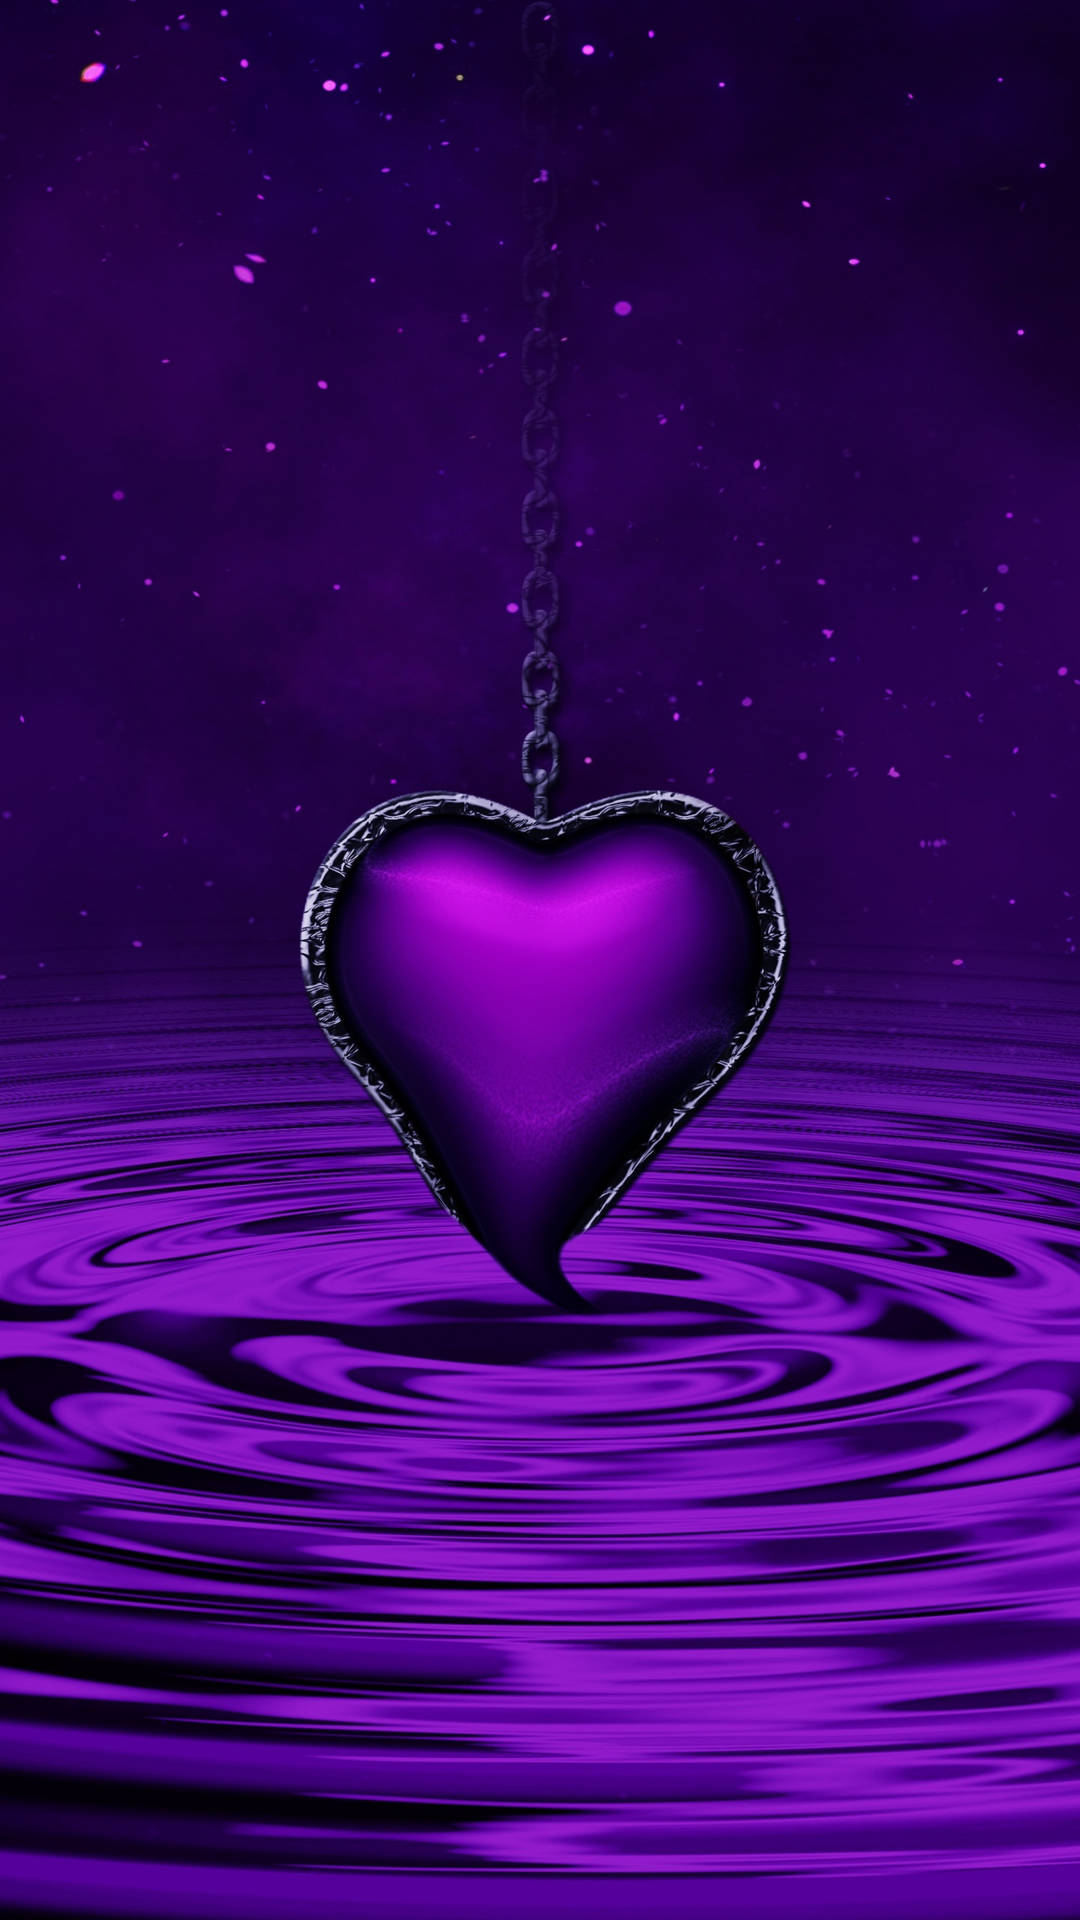 Purple Heat Black Chain Dripped In Water